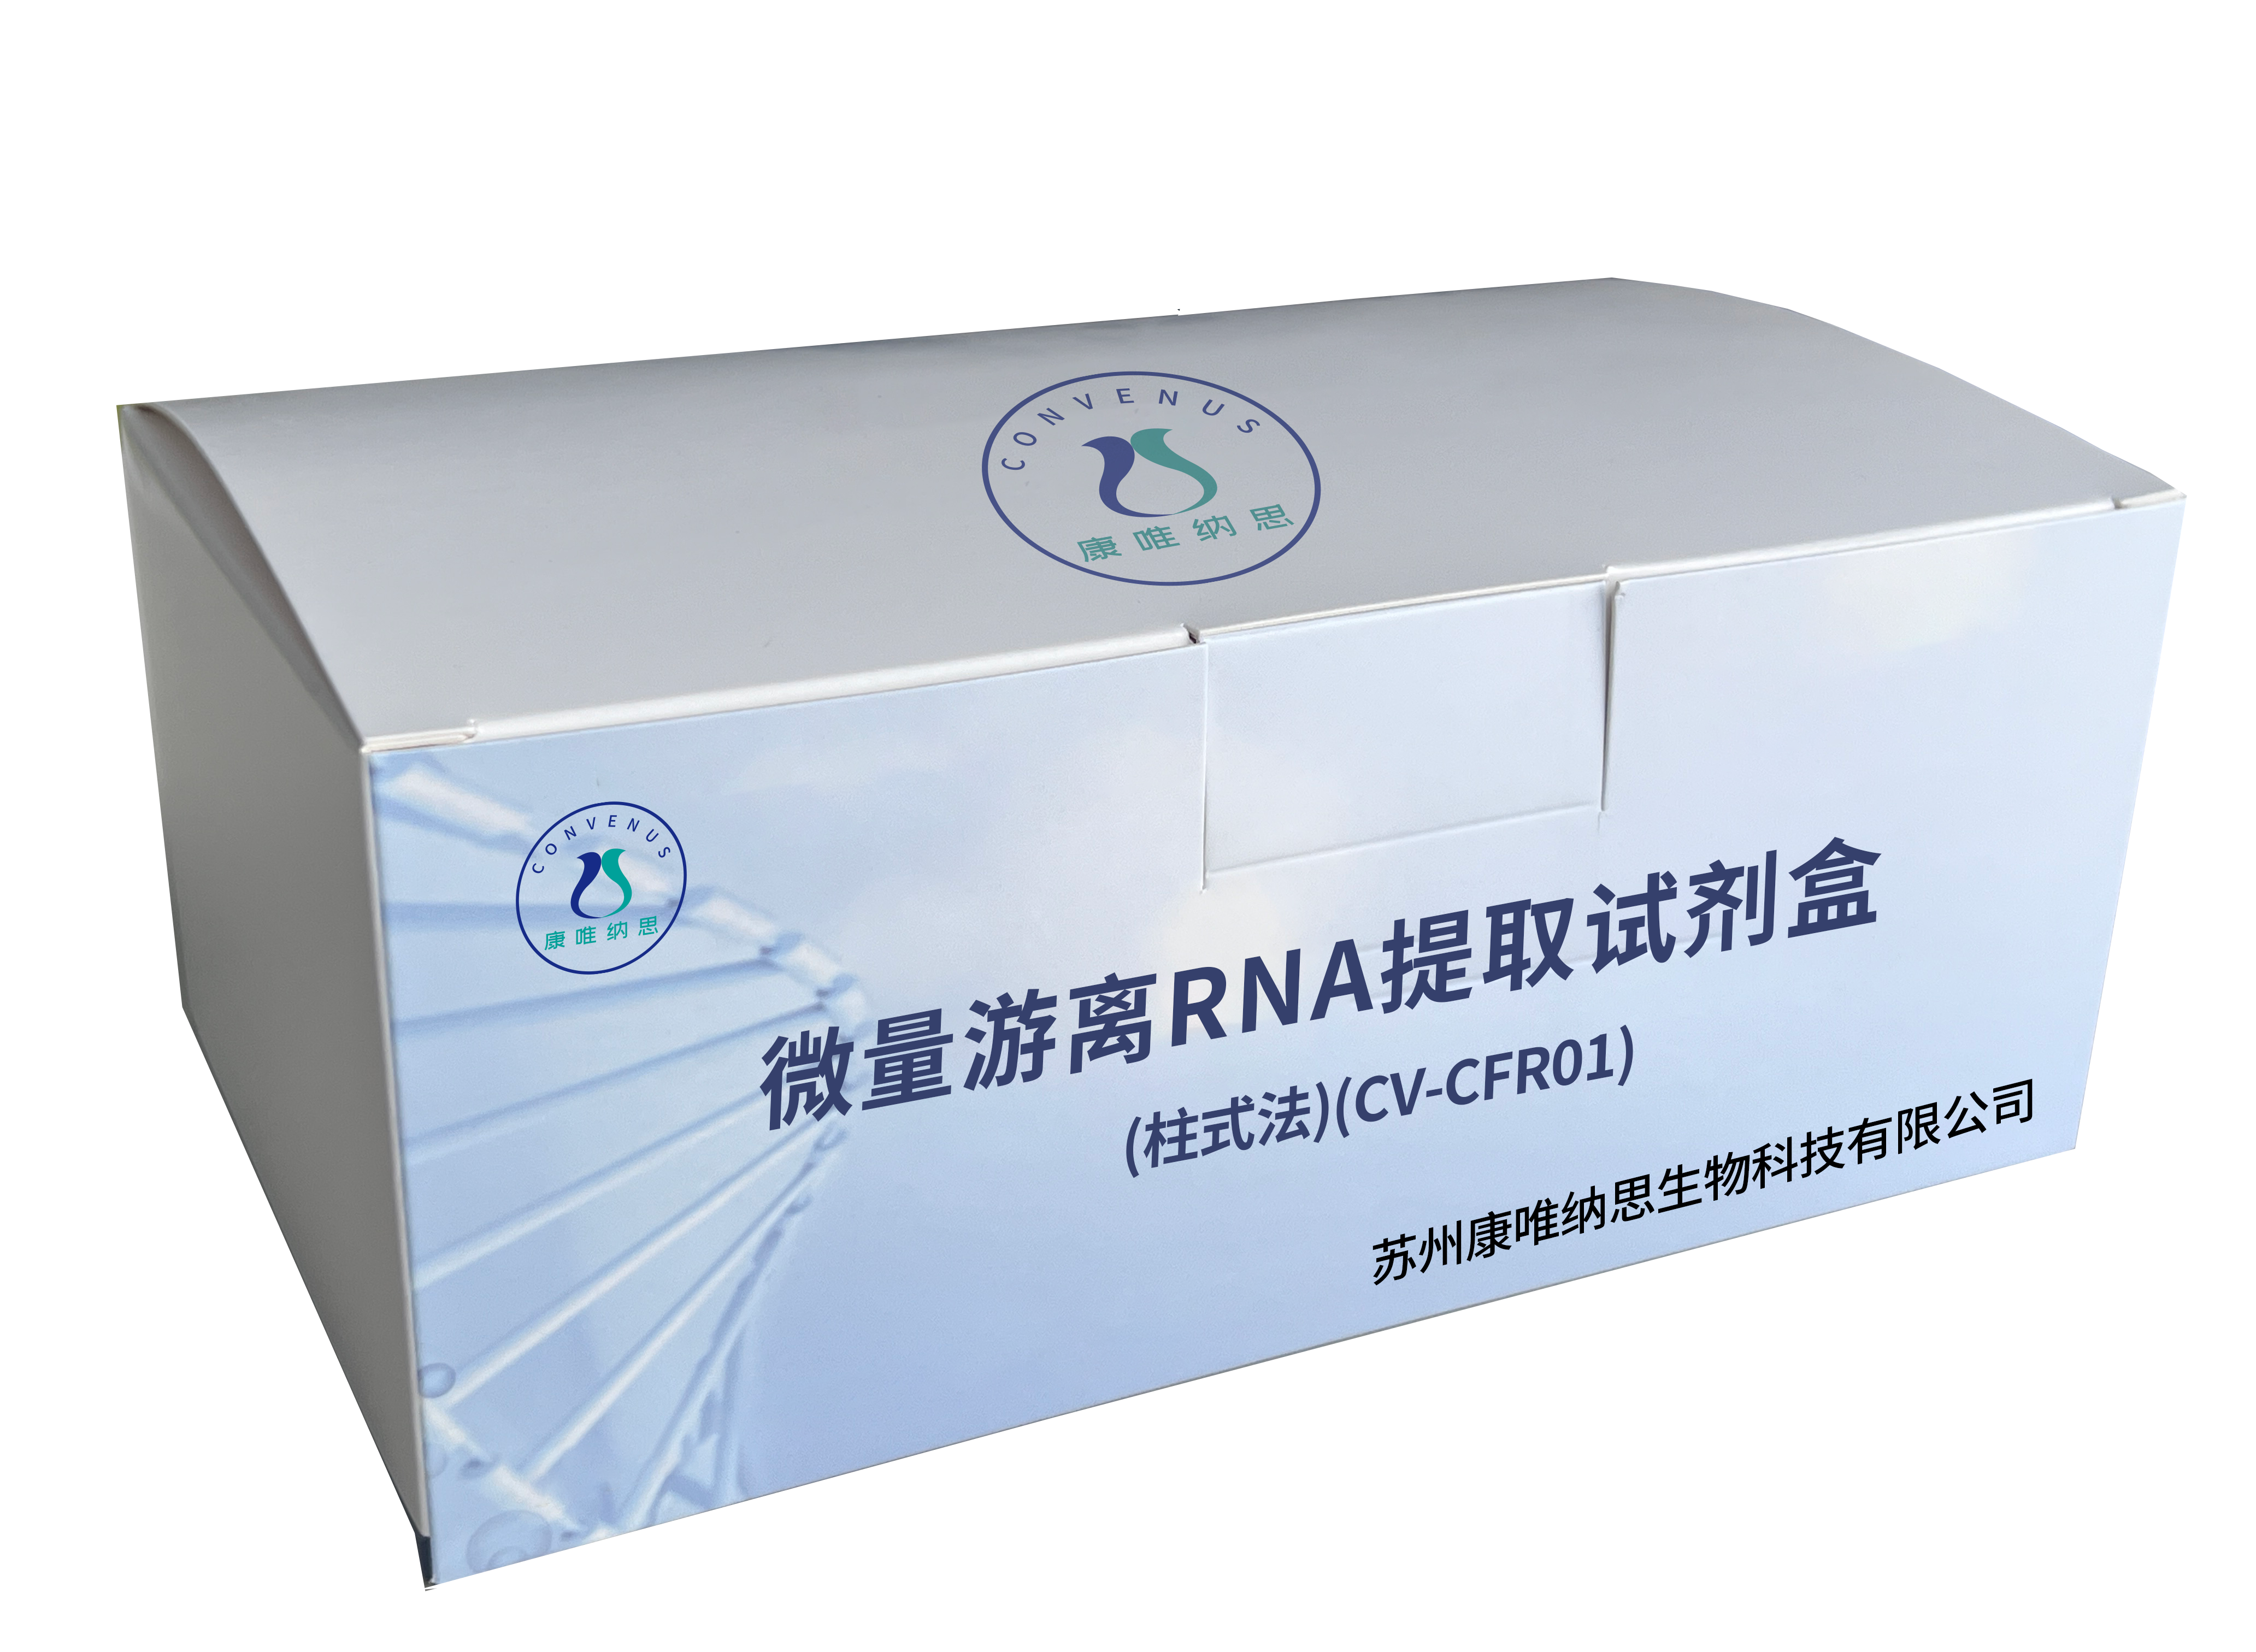 微量游离RNA提取试剂盒(柱式法)(CV-CFR01)